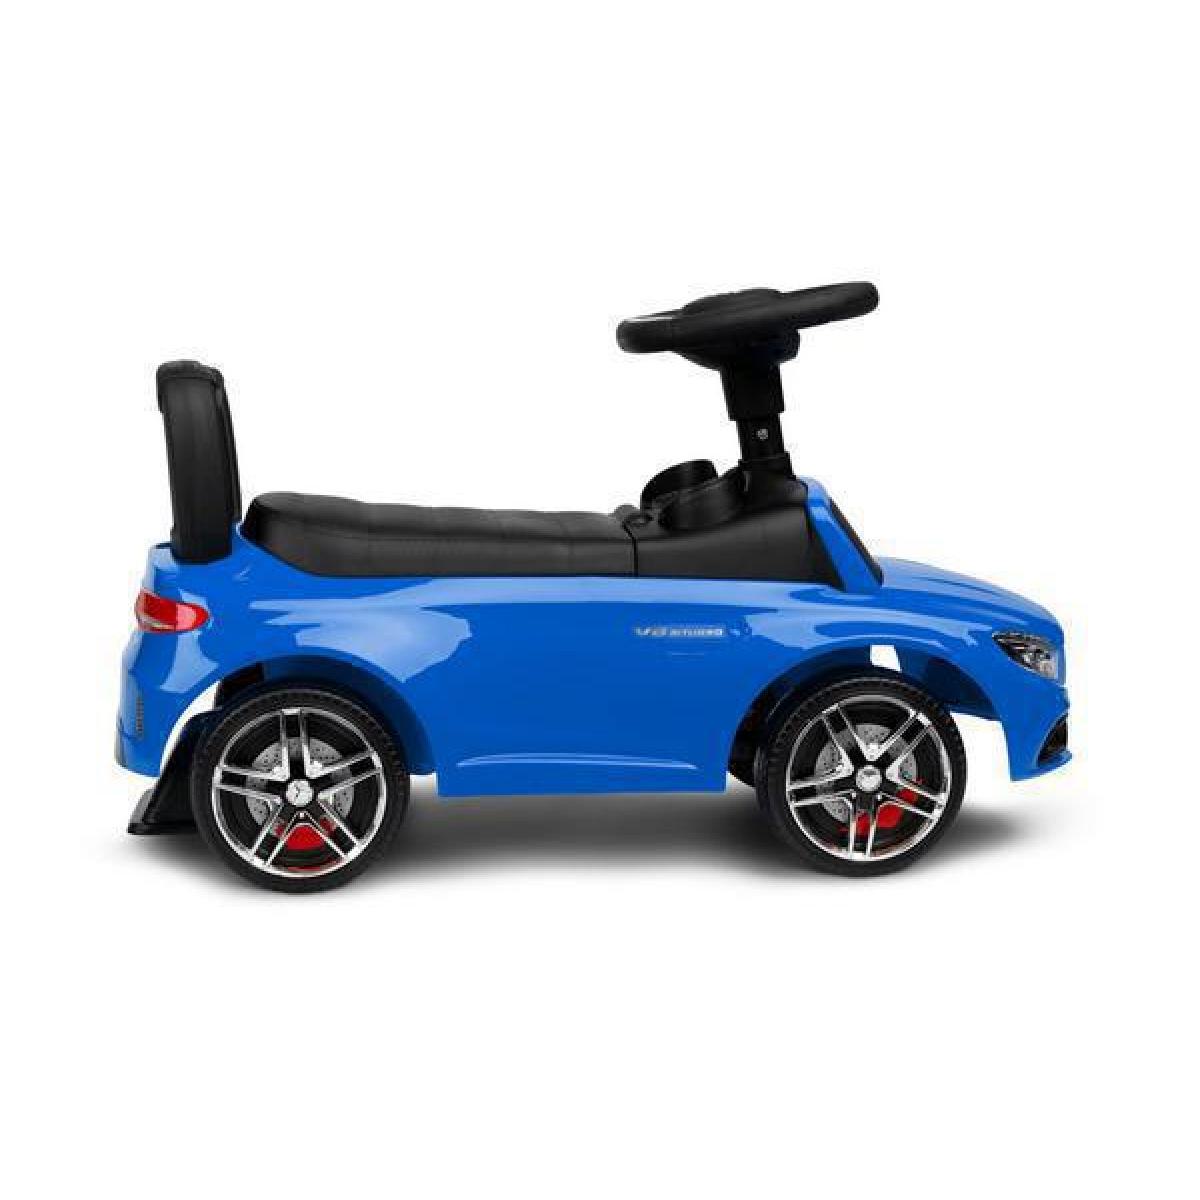 Παιδικό Αμαξάκι - Περπατούρα Ride on Car Mercedes-Benz C63 AMG Licenced Product Toyz By Caretero Μπλε